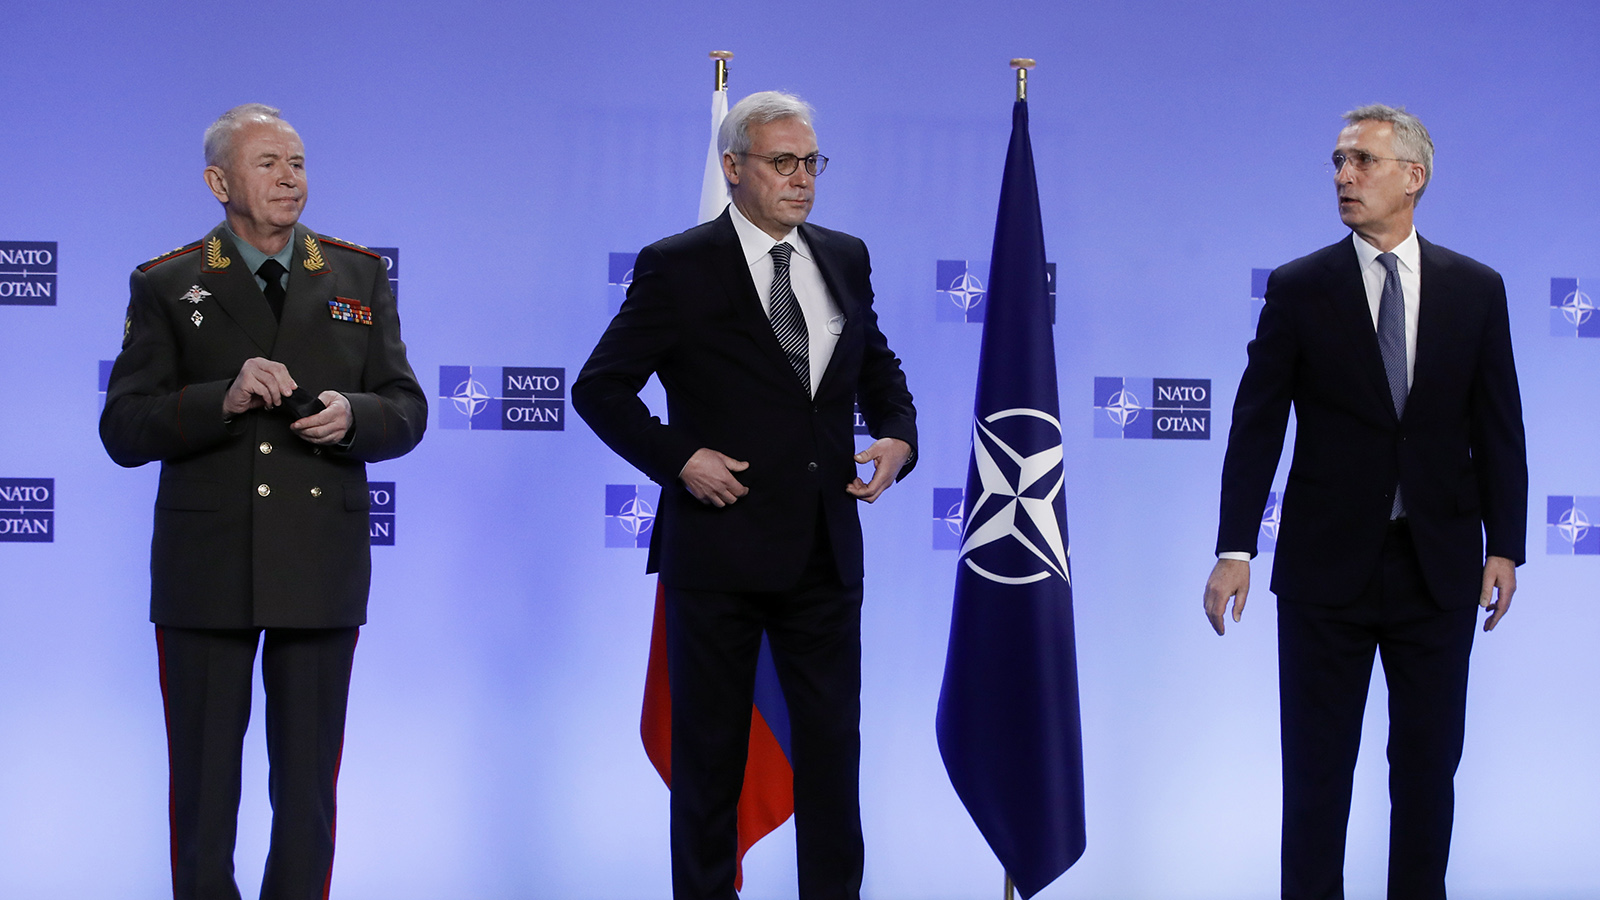 Почему отан пишется НАТО? Факты и объяснения